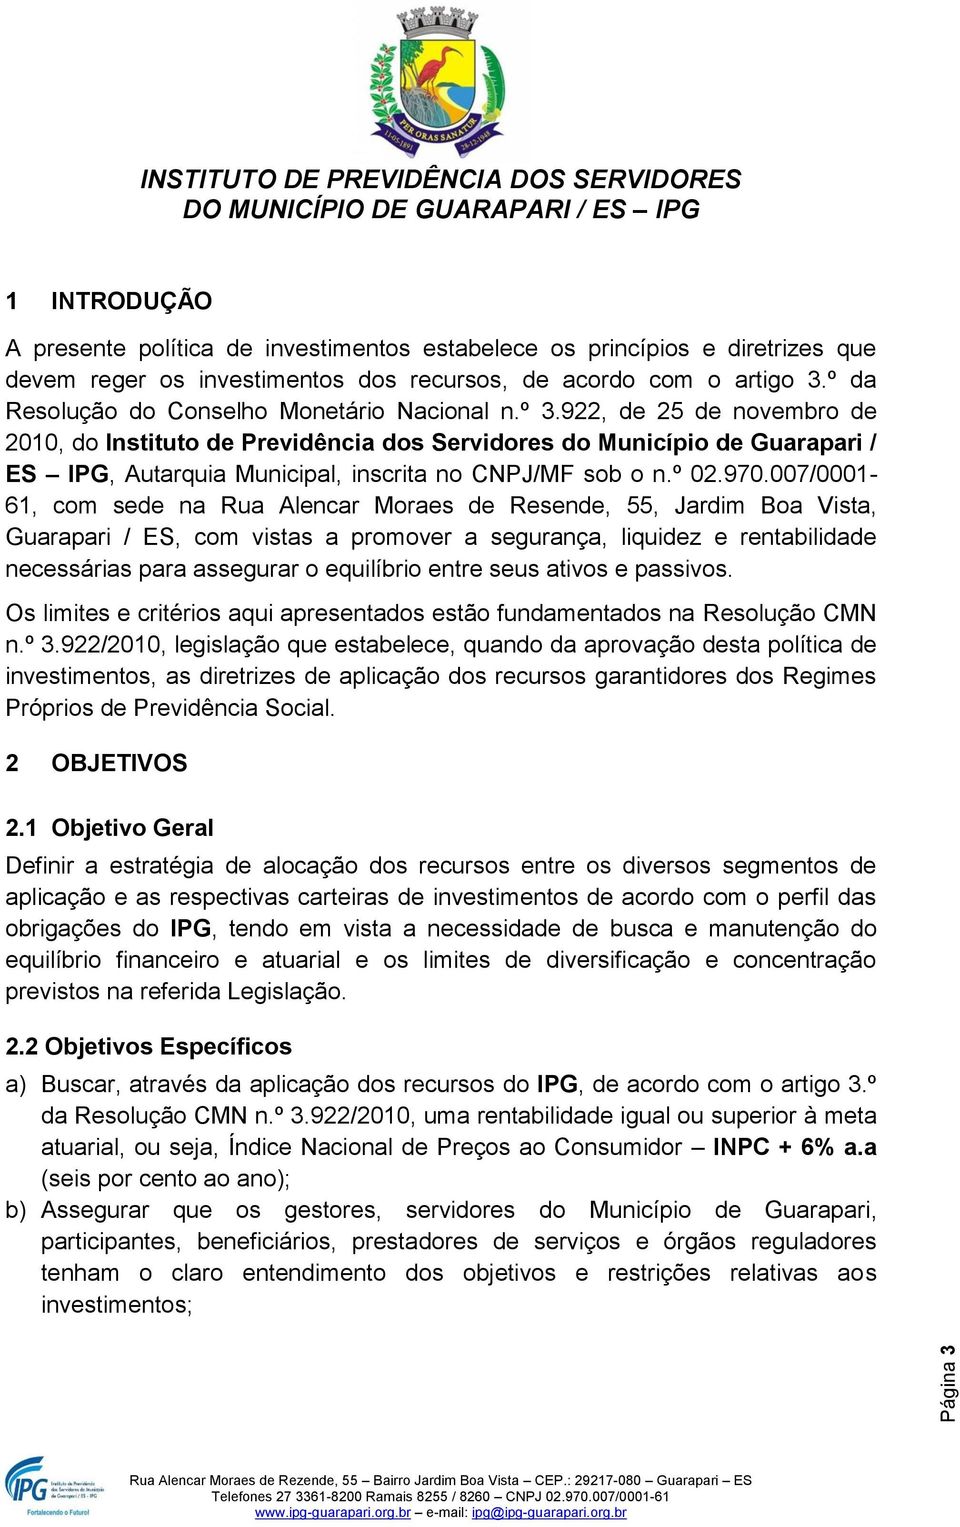 922, de 25 de novembro de 2010, do Instituto de Previdência dos Servidores do Município de Guarapari / ES IPG, Autarquia Municipal, inscrita no CNPJ/MF sob o n.º 02.970.